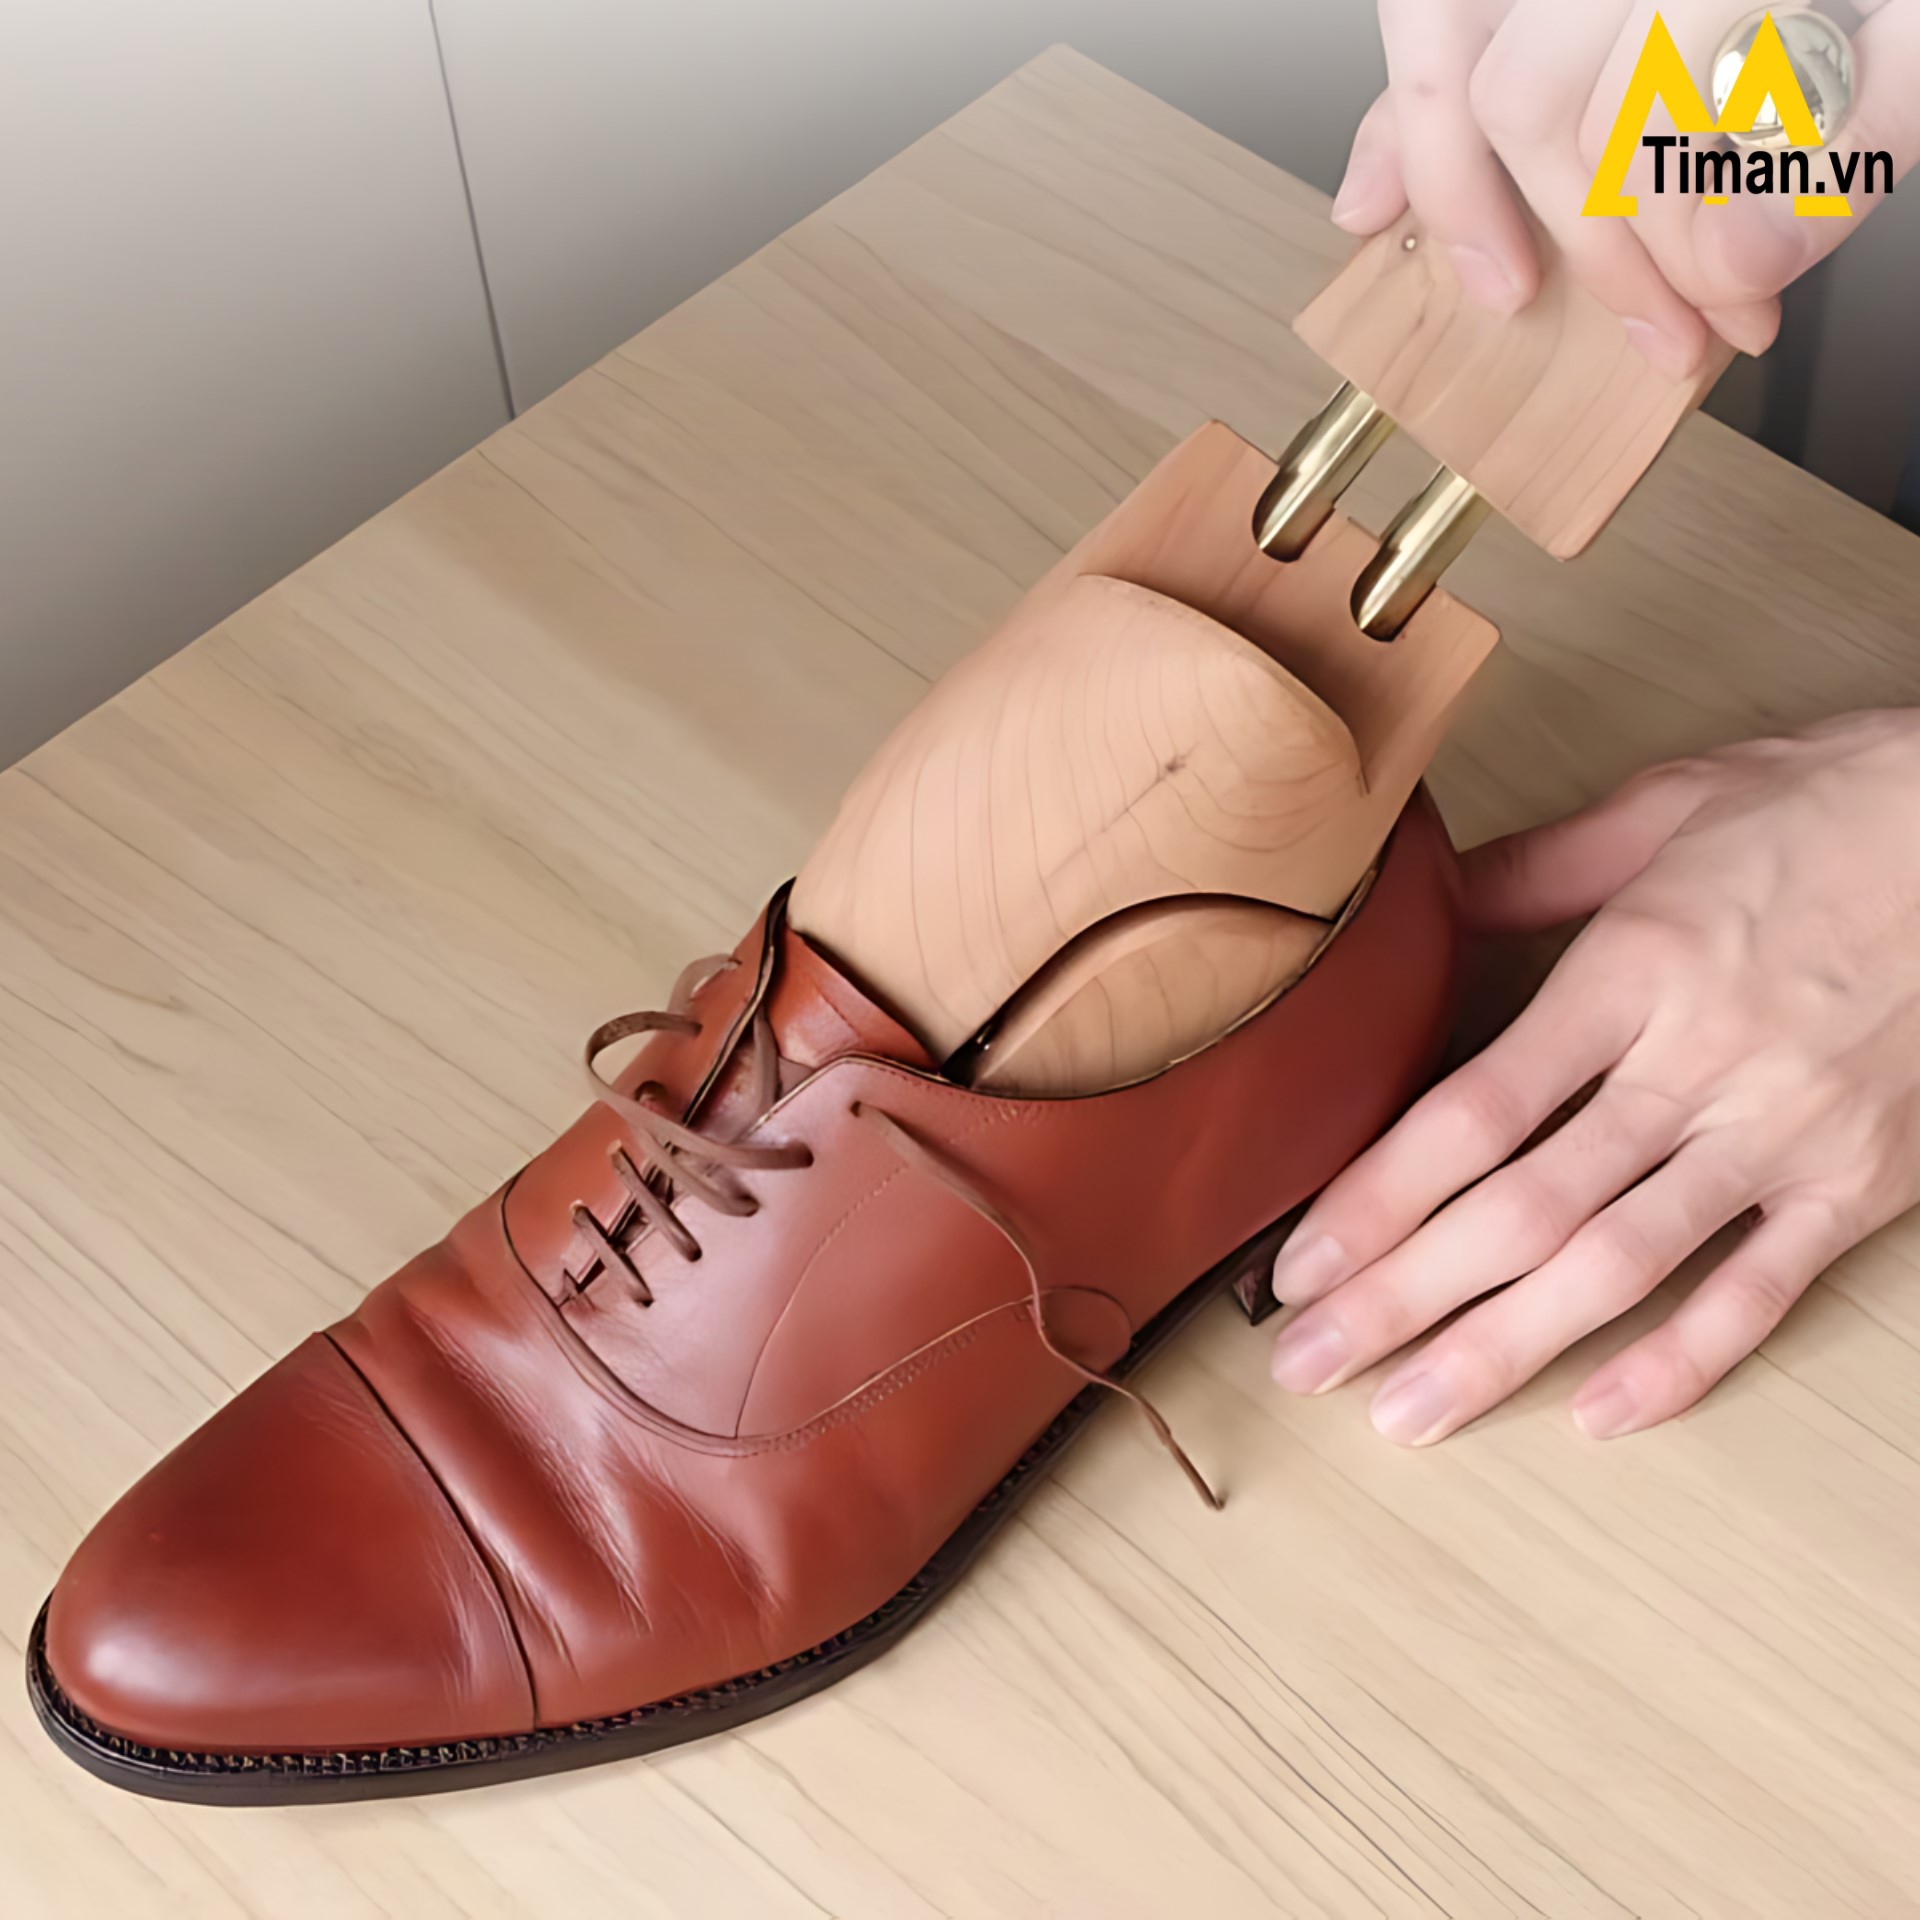 Sử dụng shoe tree bảo quản mũi giày